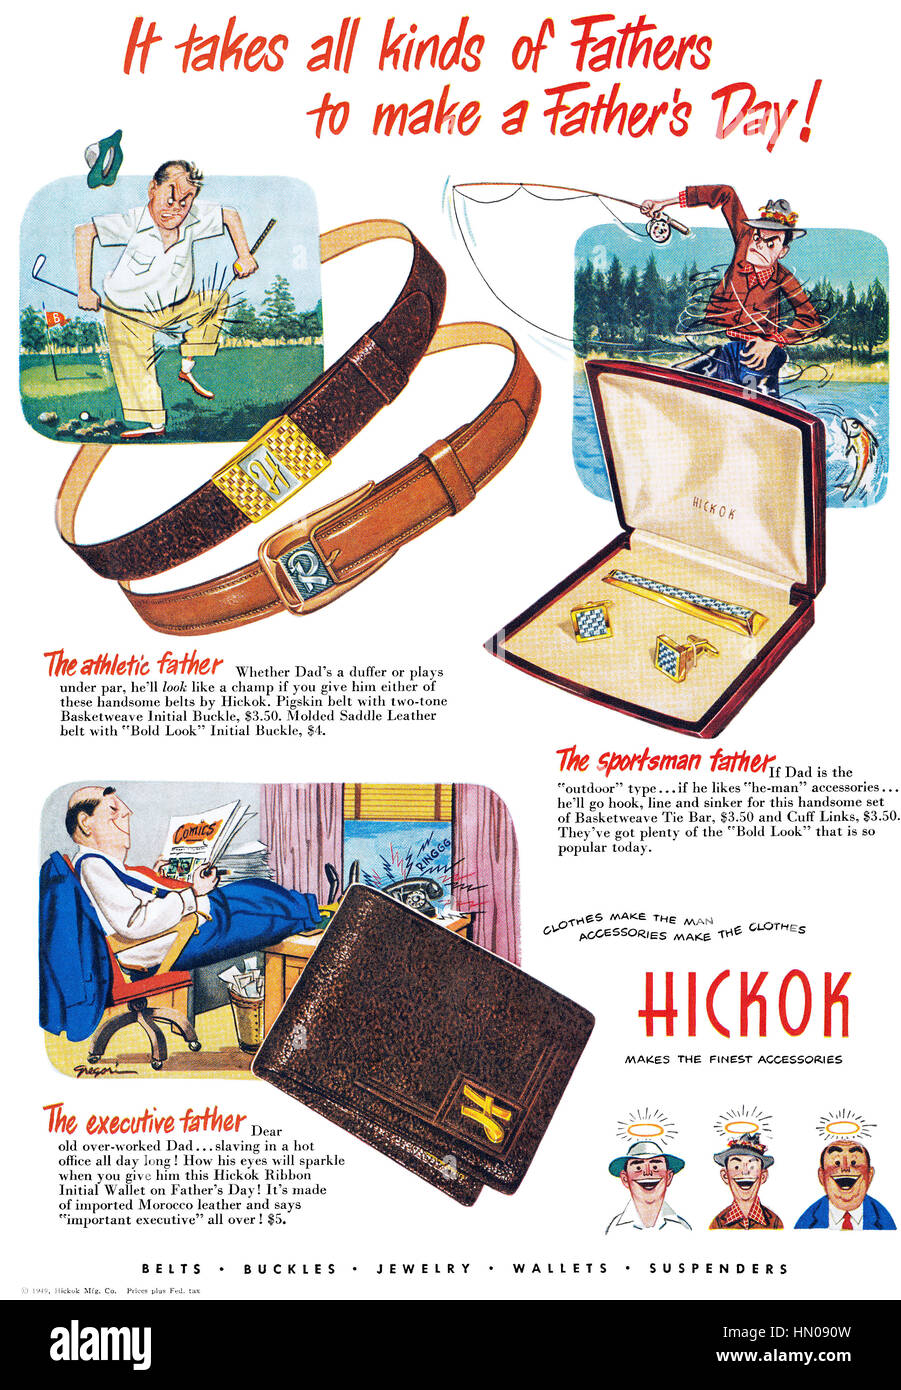 1949 U.S. advertisement for Hickok Gentlemen's Clothing Accessories Stock Photo